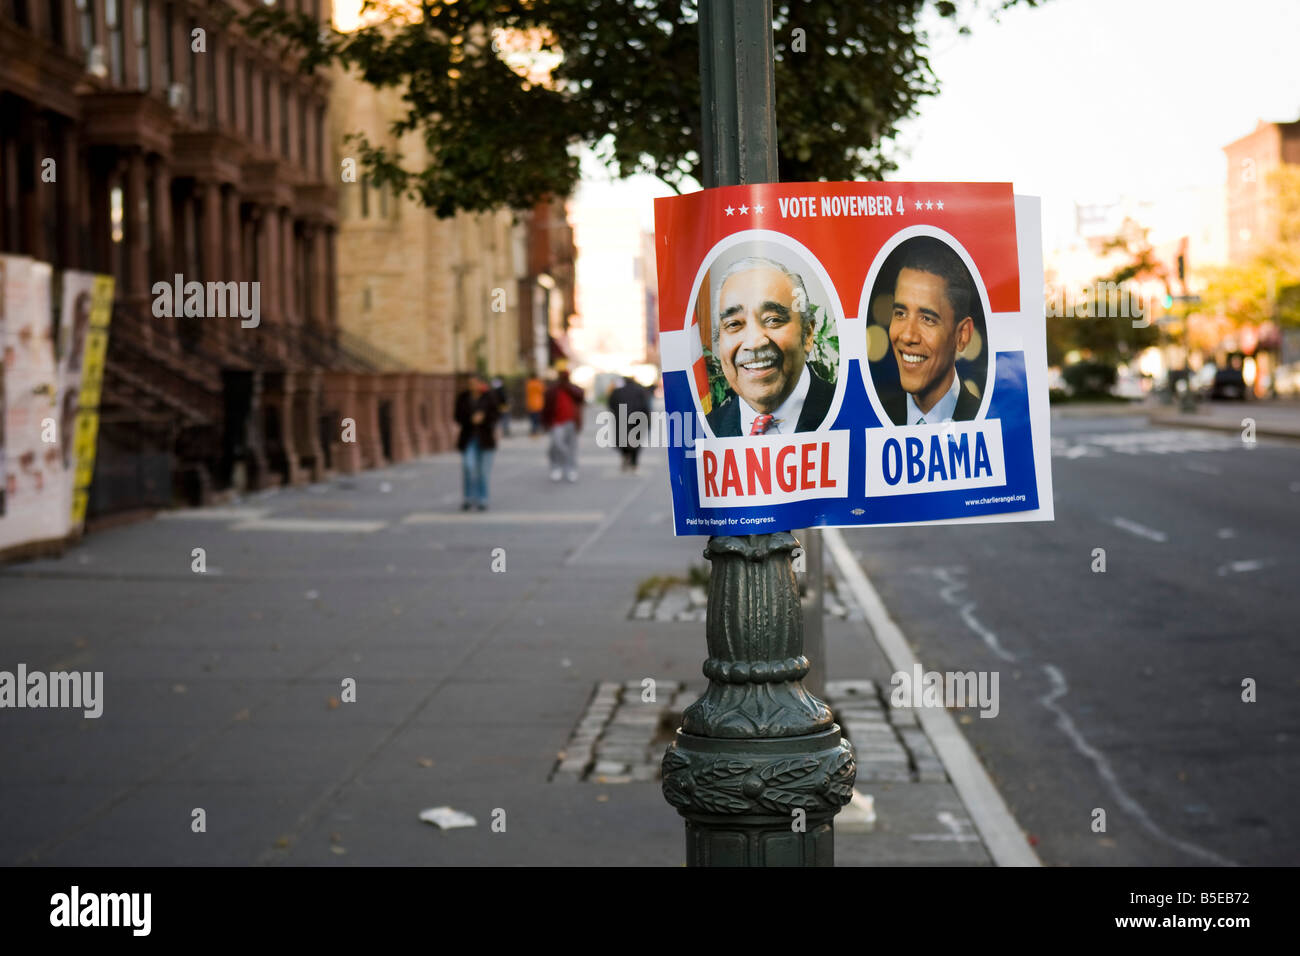 Obama Rangel yard signe fixé sur un lampadaire à Harlem, New York USA Banque D'Images